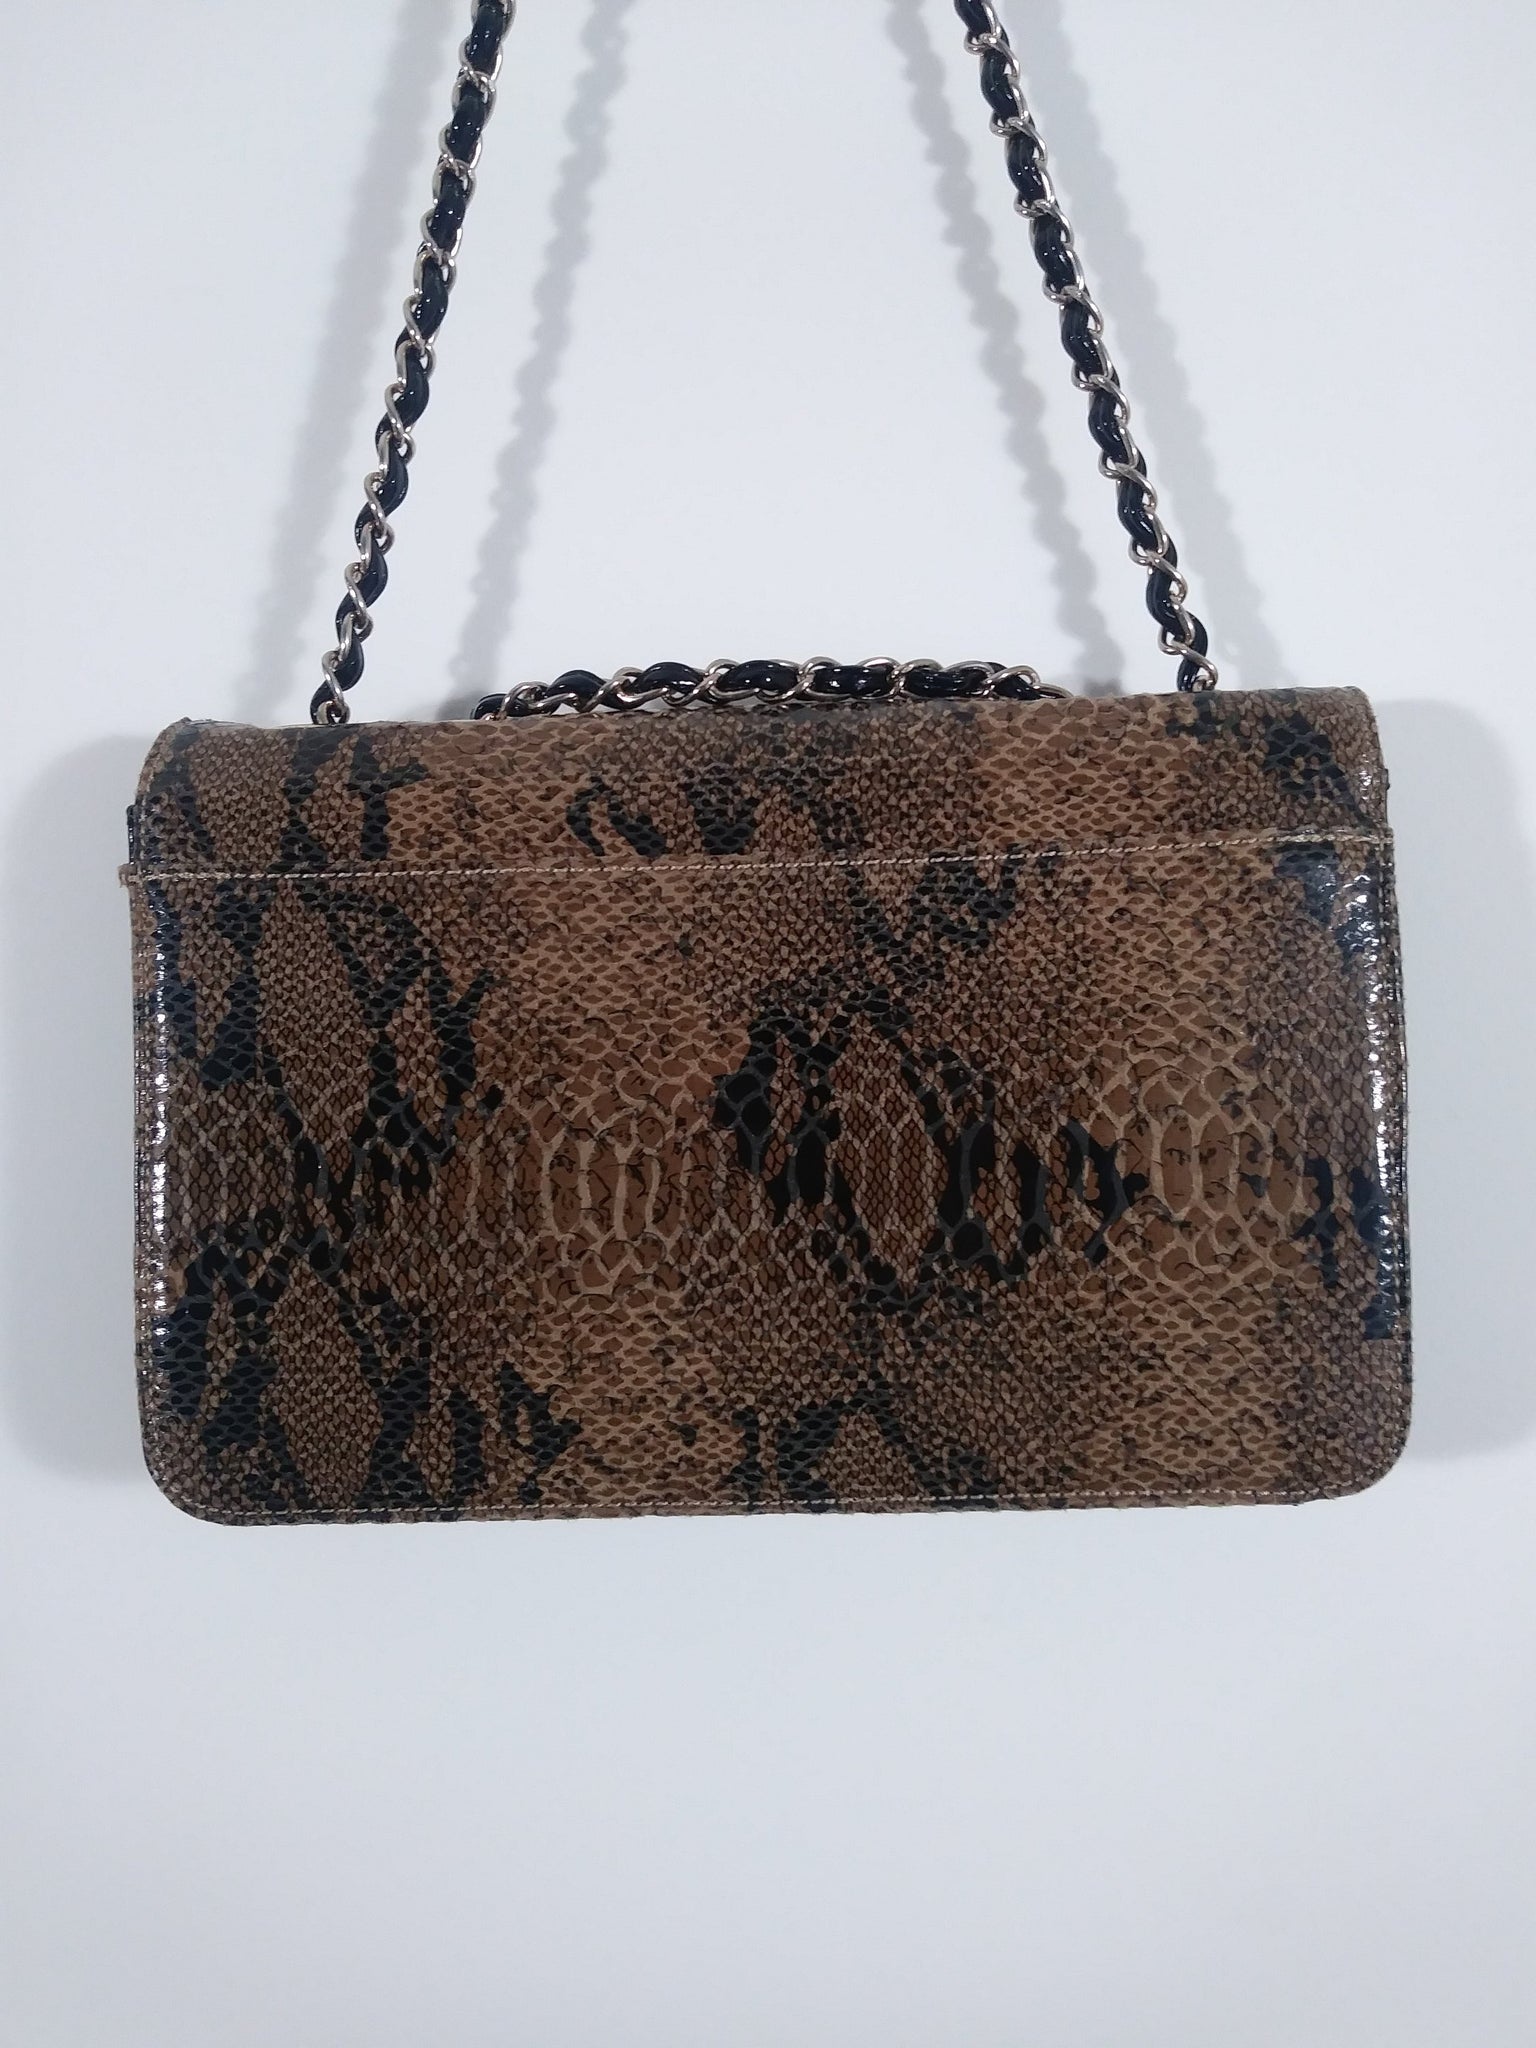 Anne Klein Womens Anne Klein quilted shoulder bag, Evergreen, One Size US:  Handbags: Amazon.com